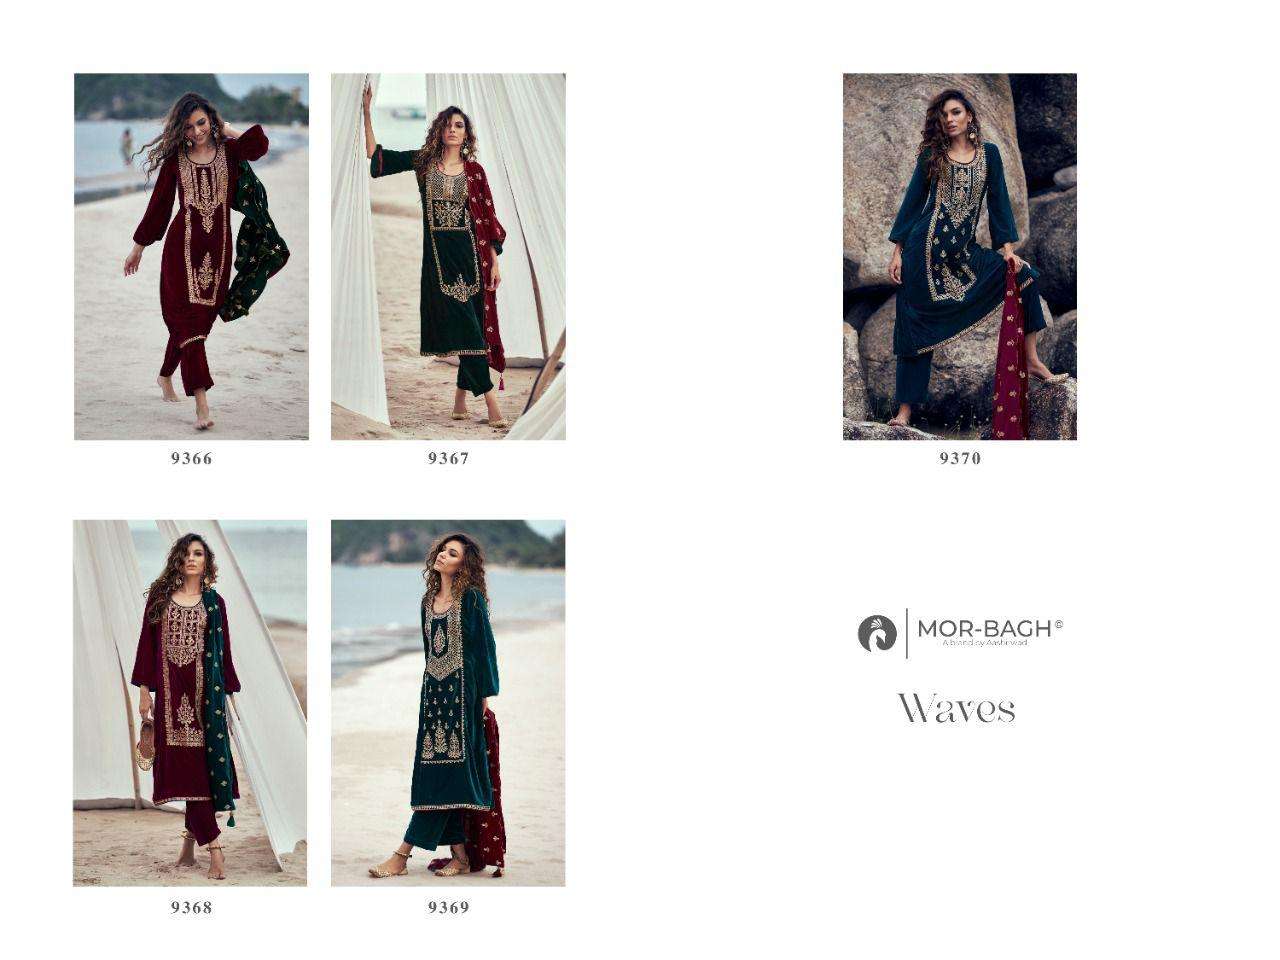 aashirwad creation mor-bagh waves 9366-9370 series velvet designer salwar kameez online shopping surat 